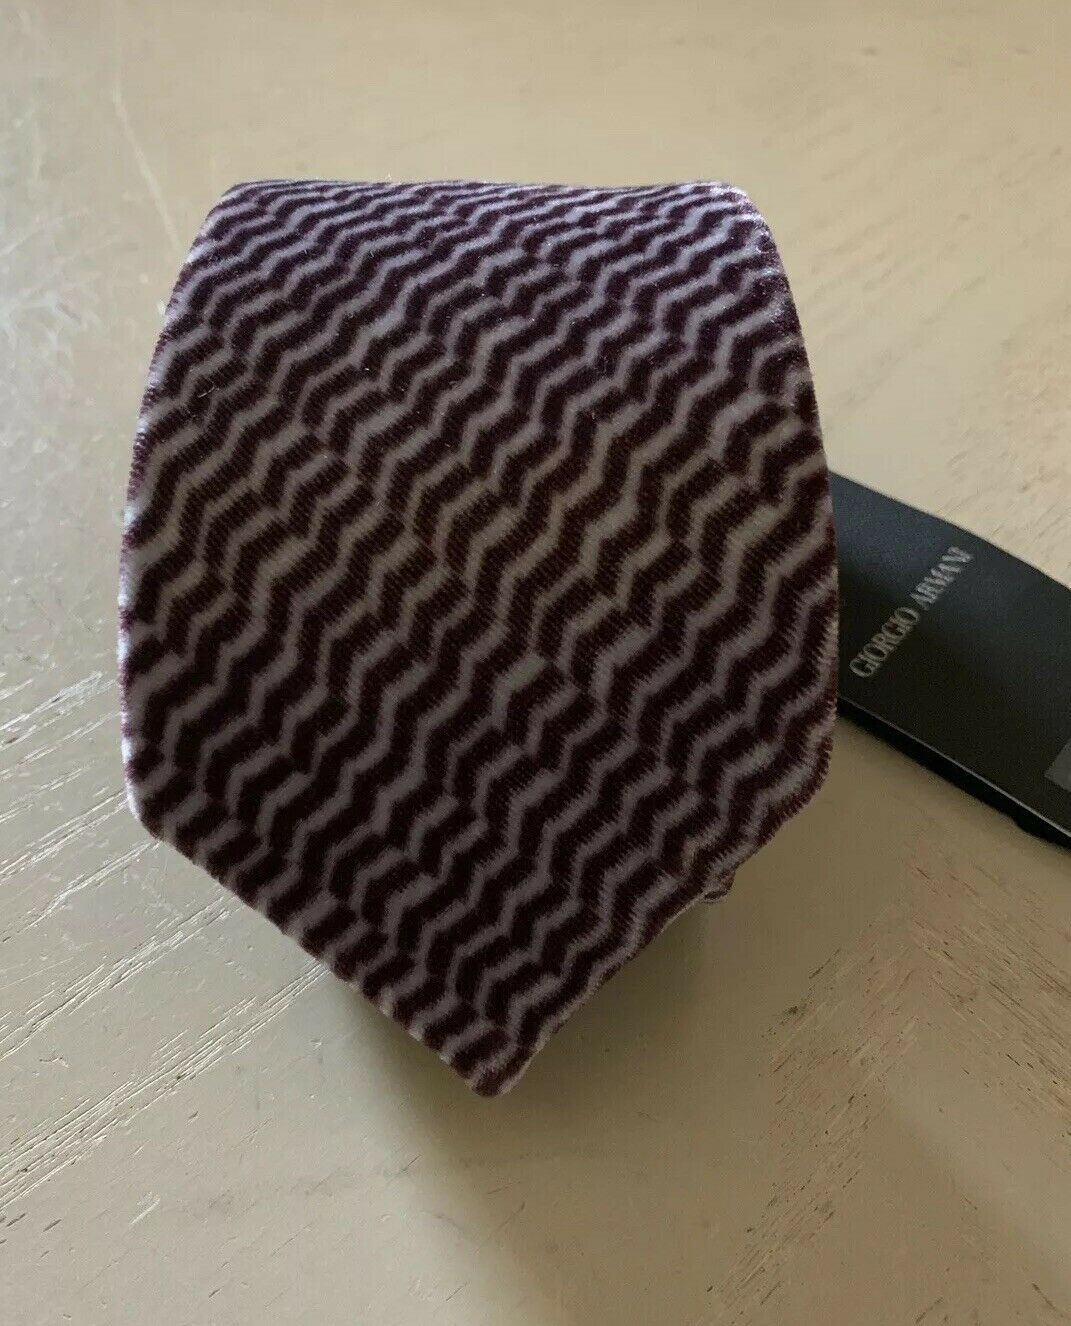 New $445 Giorgio Armani Neck Tie Purple Hand made in Italy